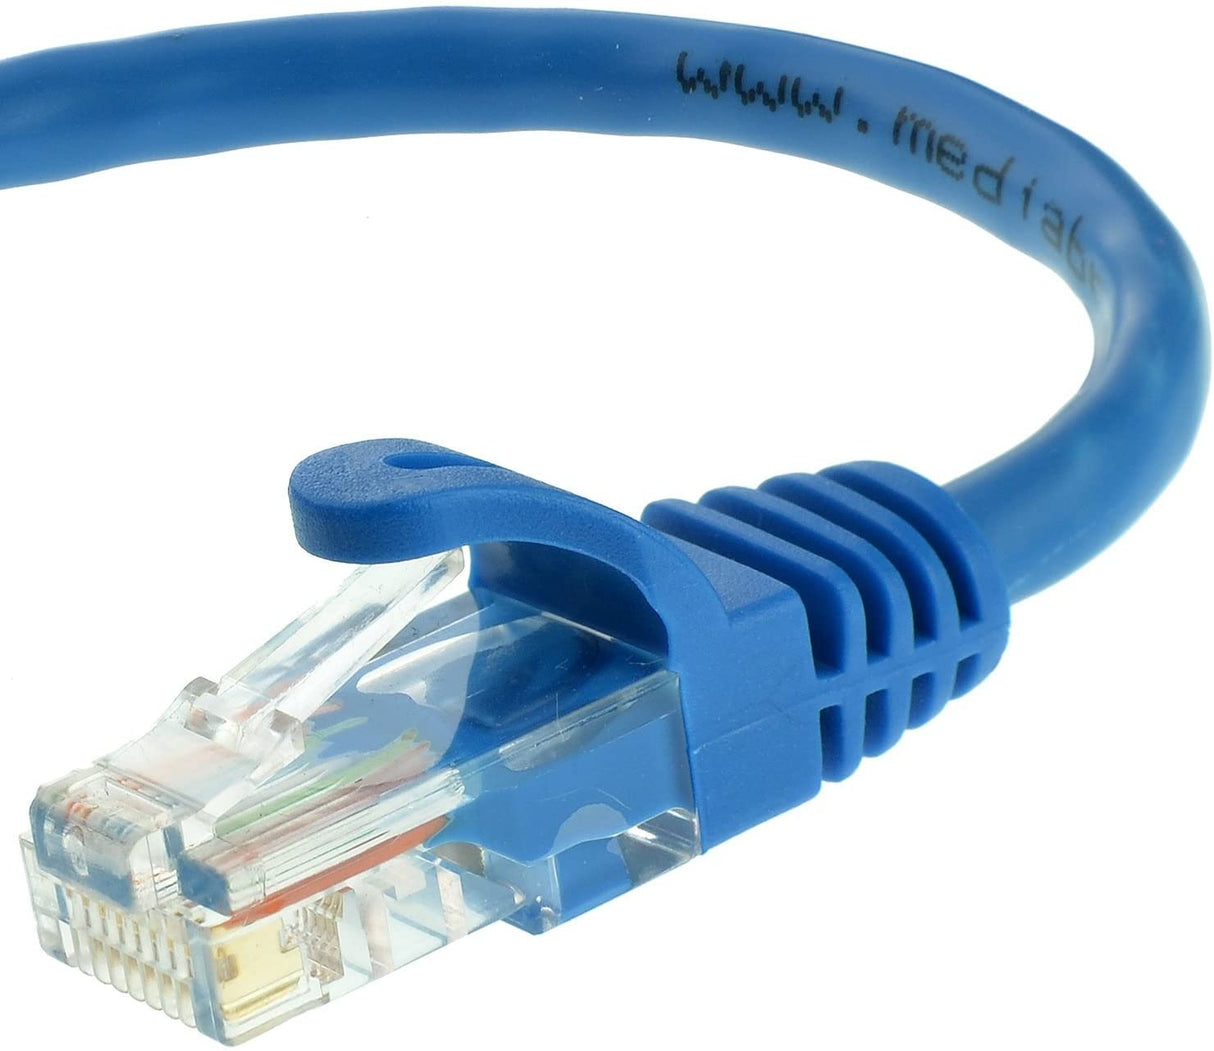 StarTech.com Cat5e Ethernet Cable20 ft - Blue - Patch Cable - Snagless Cat5e Cable - Network Cable - Ethernet Cord - Cat 5e Cable - 20ft (RJ45PATCH20) 20 ft / 6m Blue